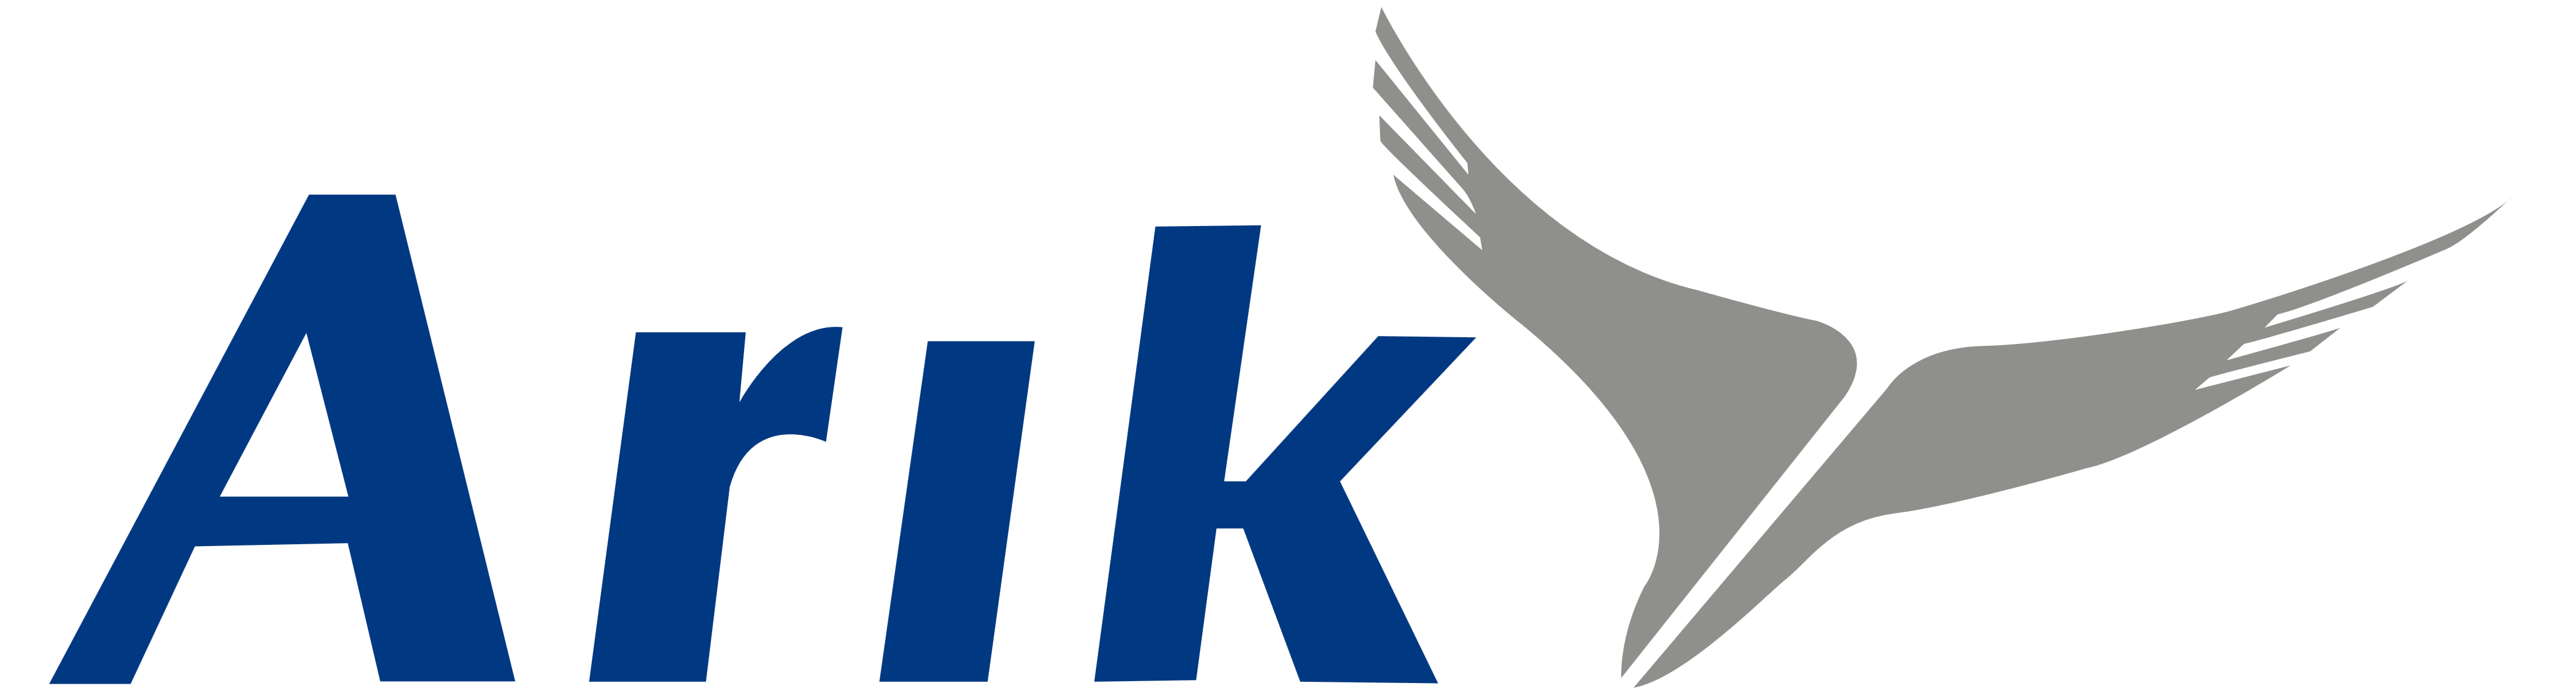 Arik Air logo, logotype